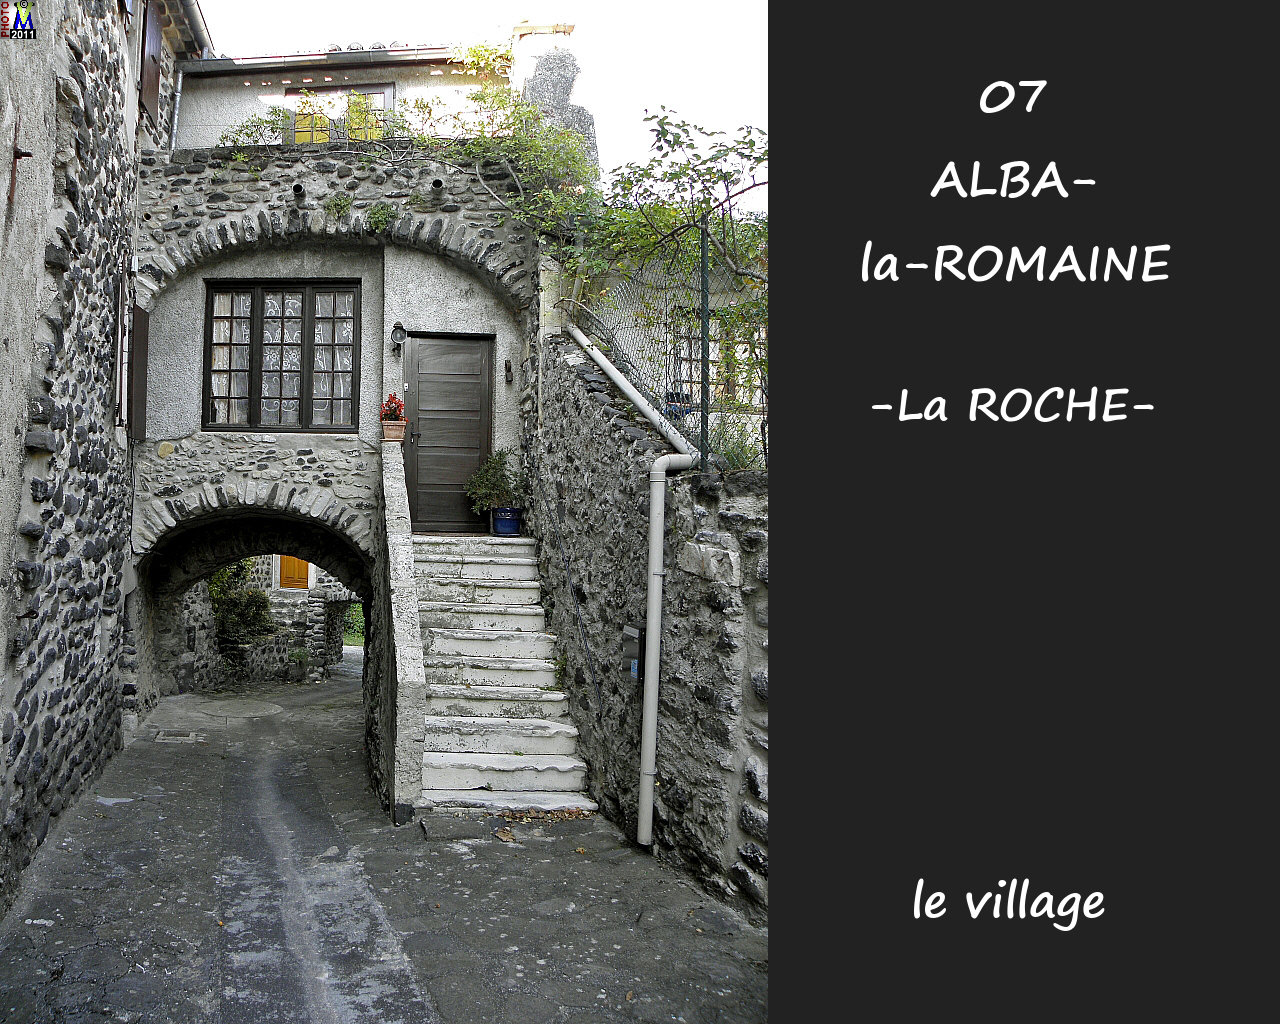 07ALBA-ROMAINEzROCHE_village_126.jpg